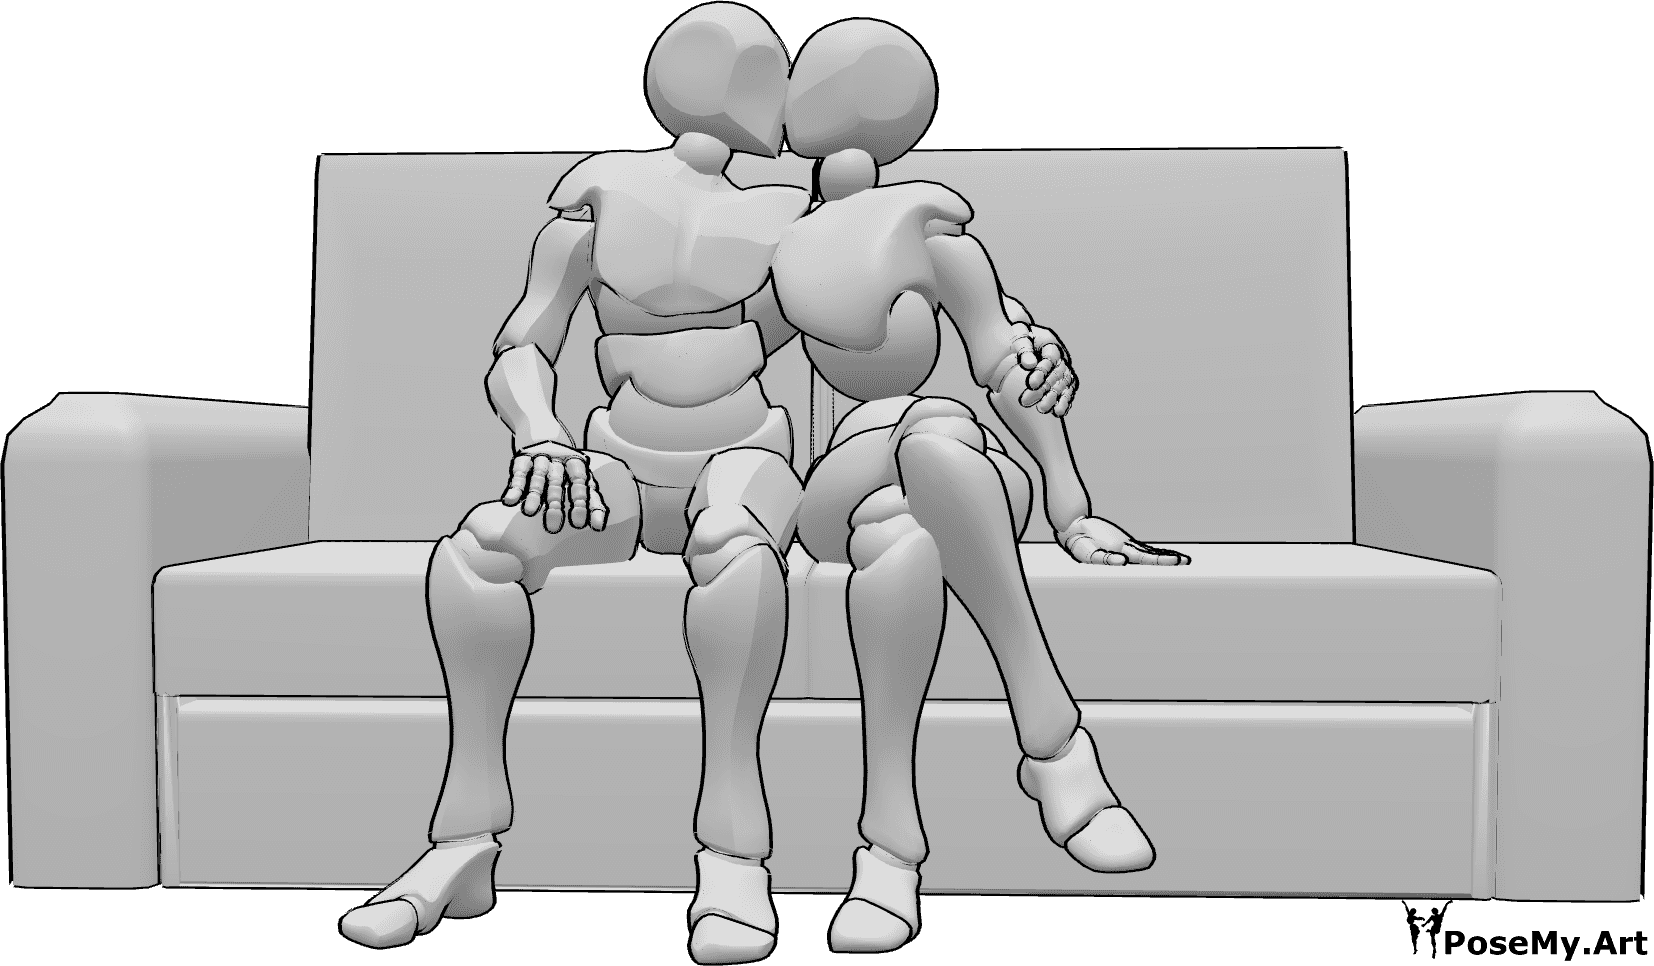 Référence des poses- Posture d'étreinte en position assise - Un homme et une femme sont assis sur le canapé et s'embrassent.